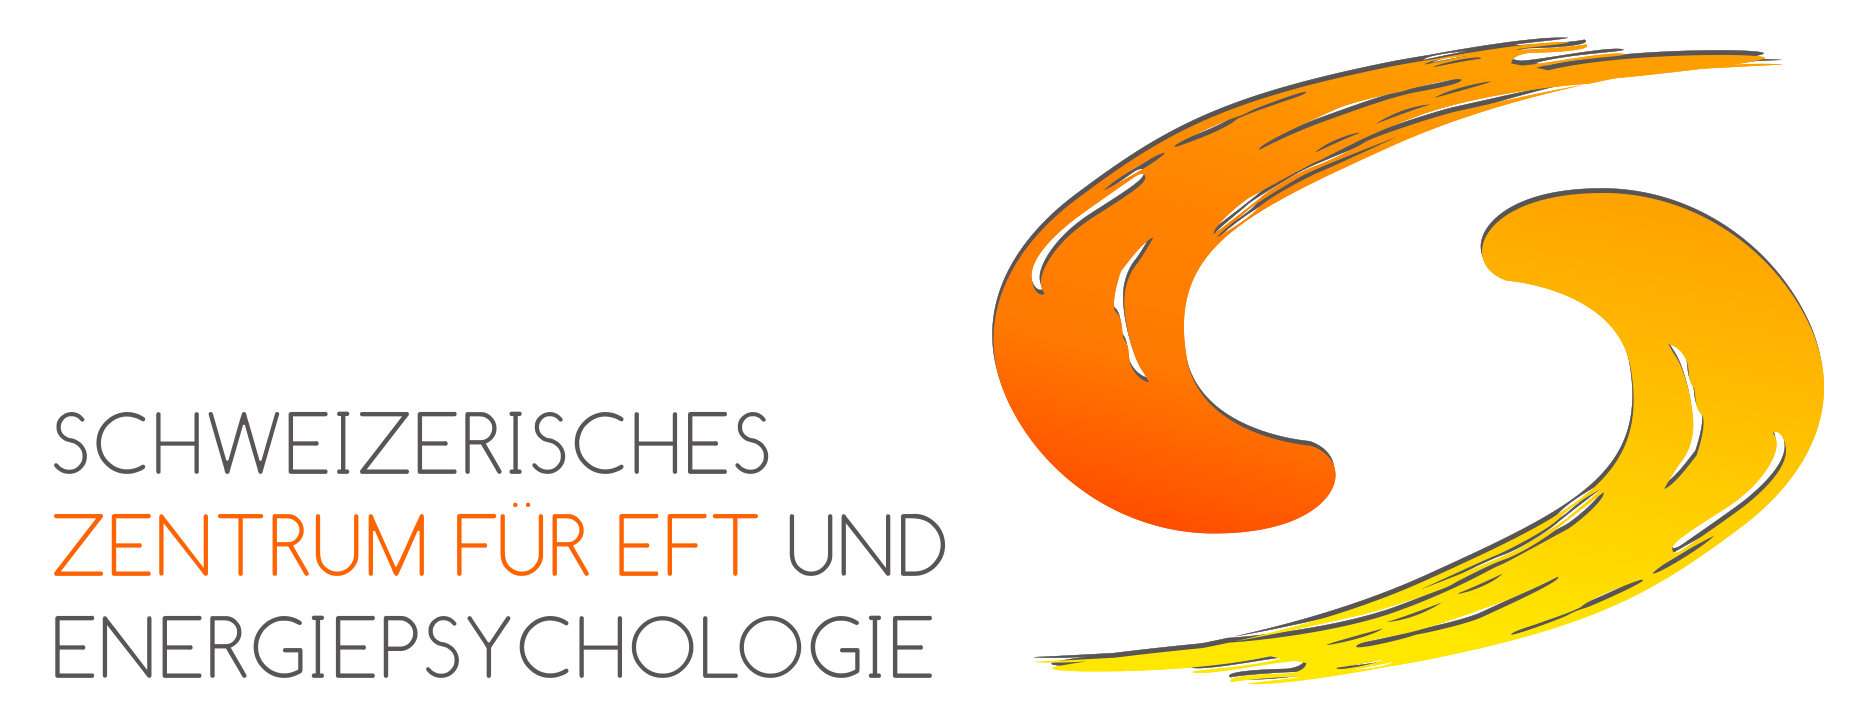 Schweizerisches Zentrum für EFT und Energiepsychologie